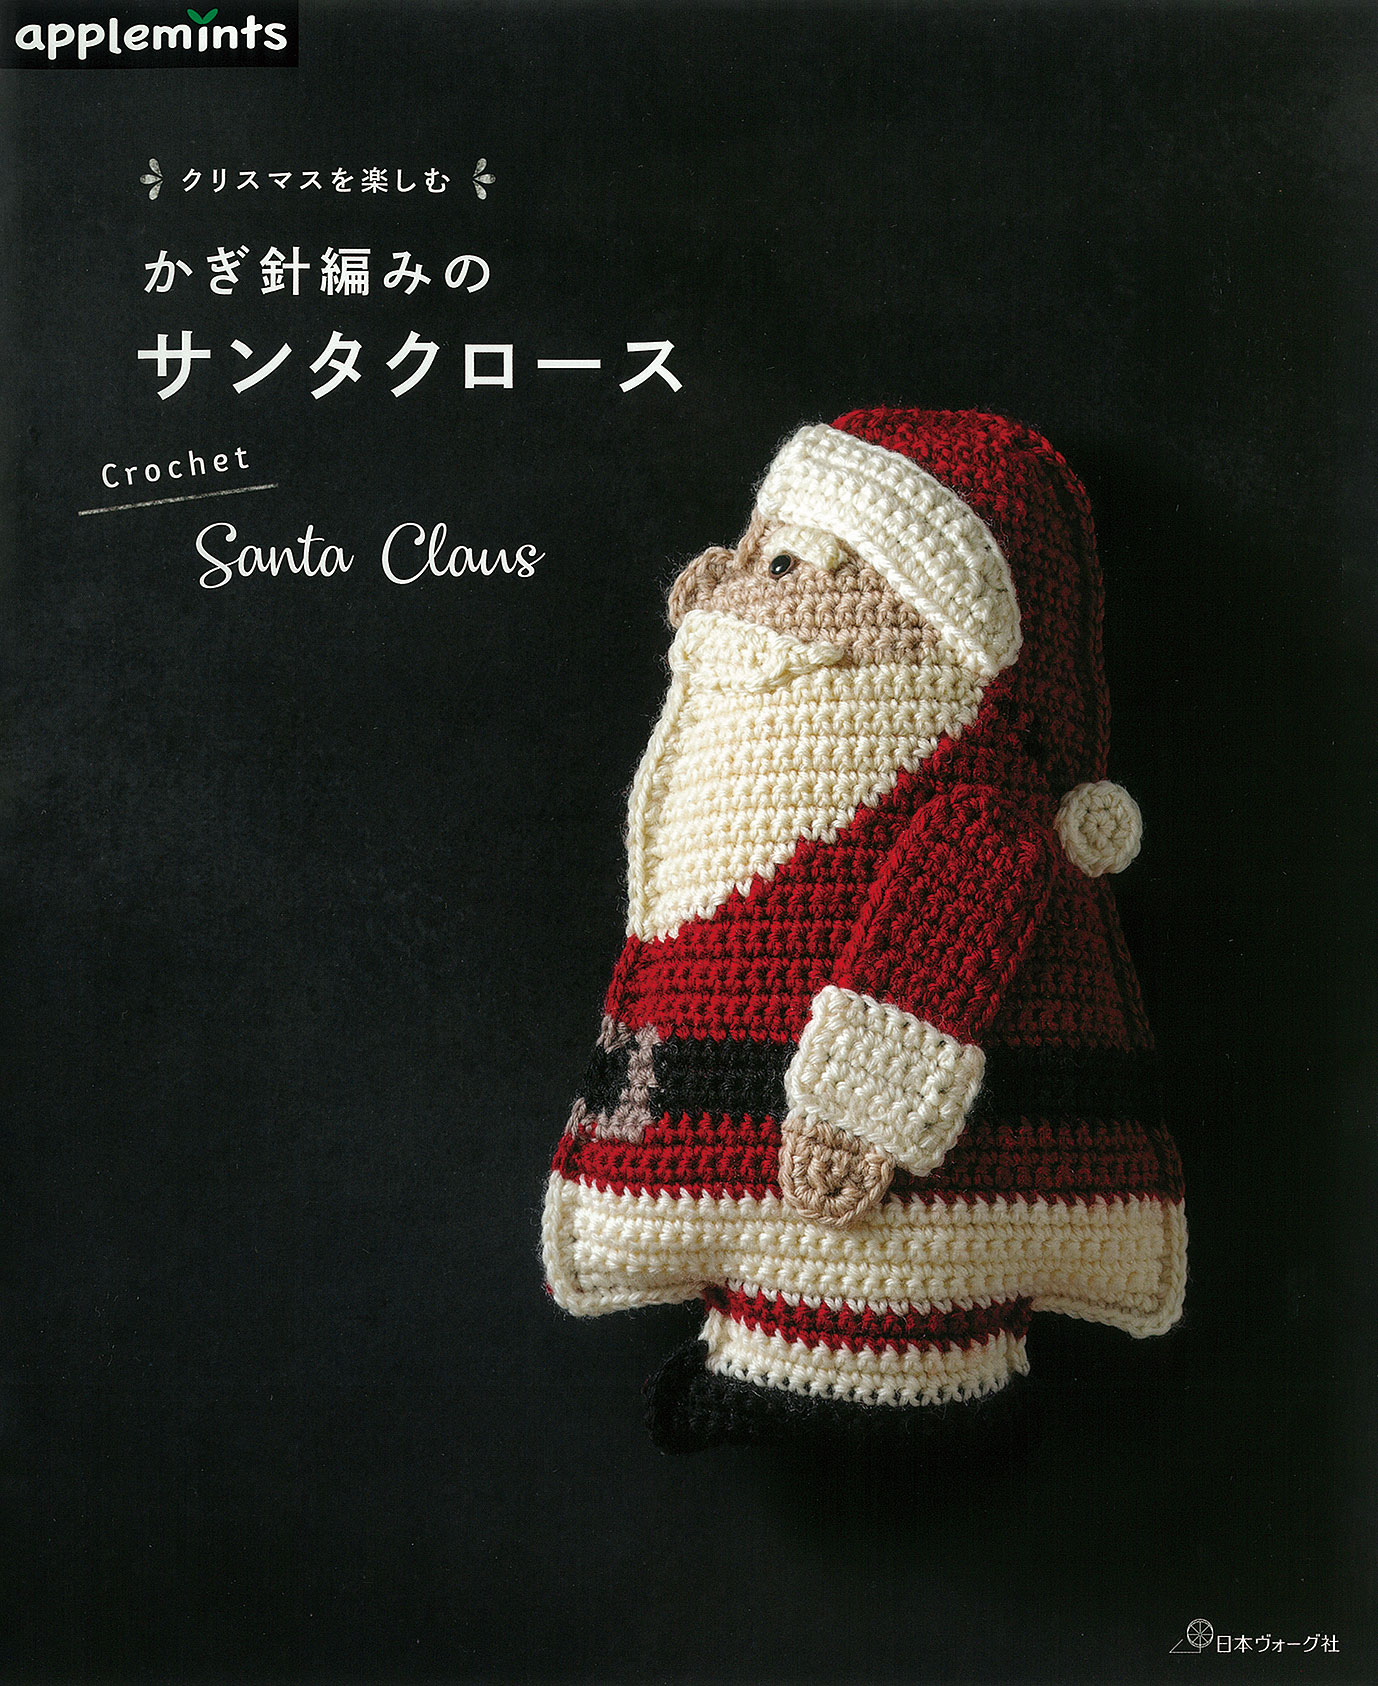 〈applemintsシリーズ〉クリスマスを楽しむ かぎ針編みのサンタクロース